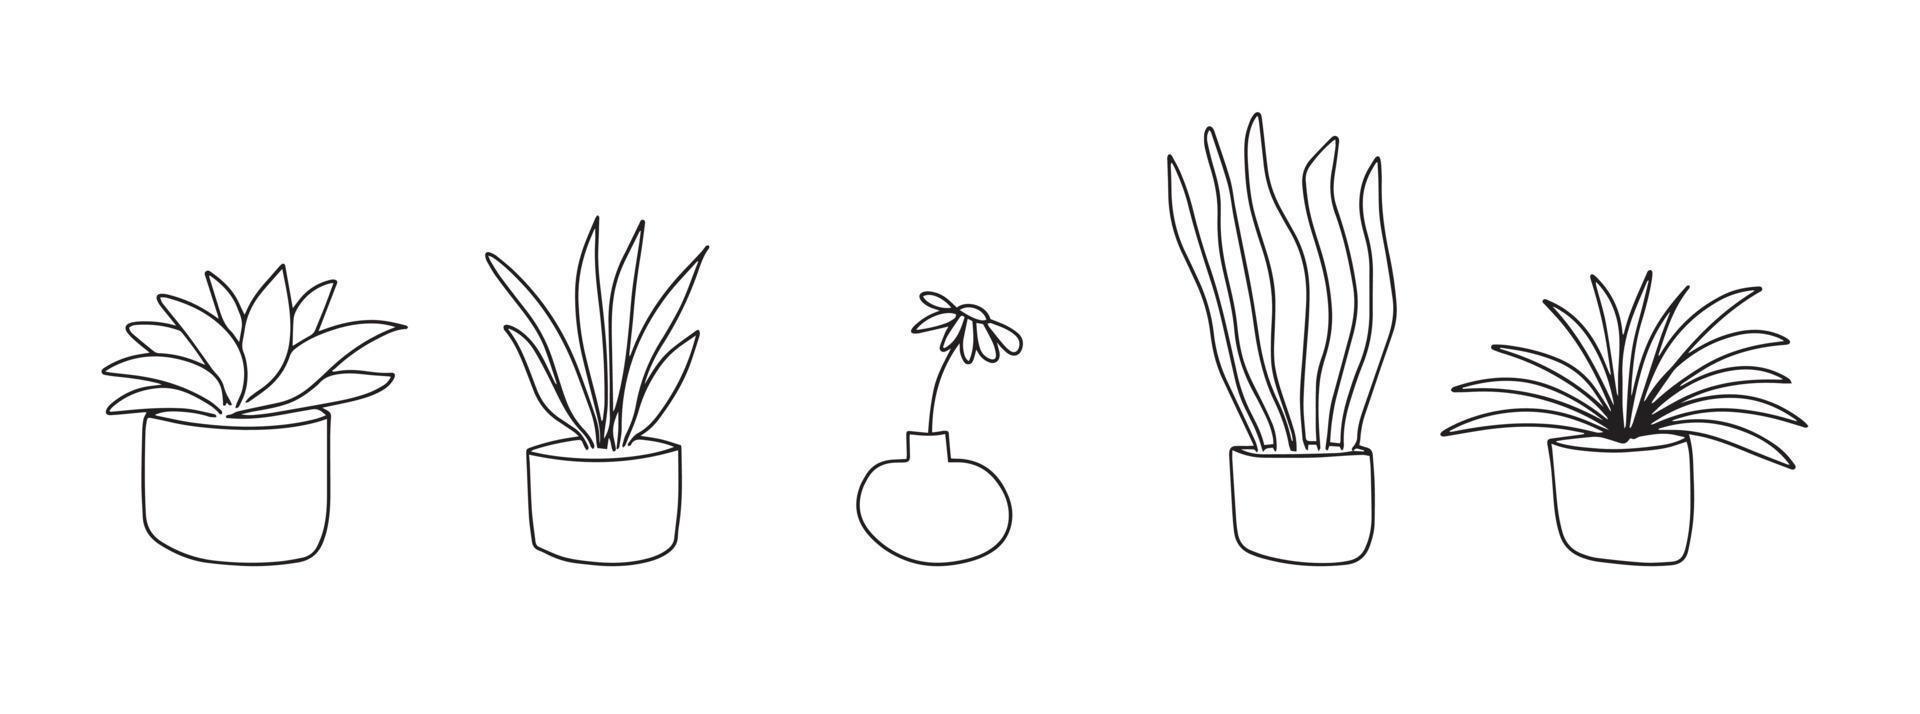 set di fiori per la casa. i fiori in vaso sono disegnati con una linea nera su sfondo bianco. linee di disegno vettoriale